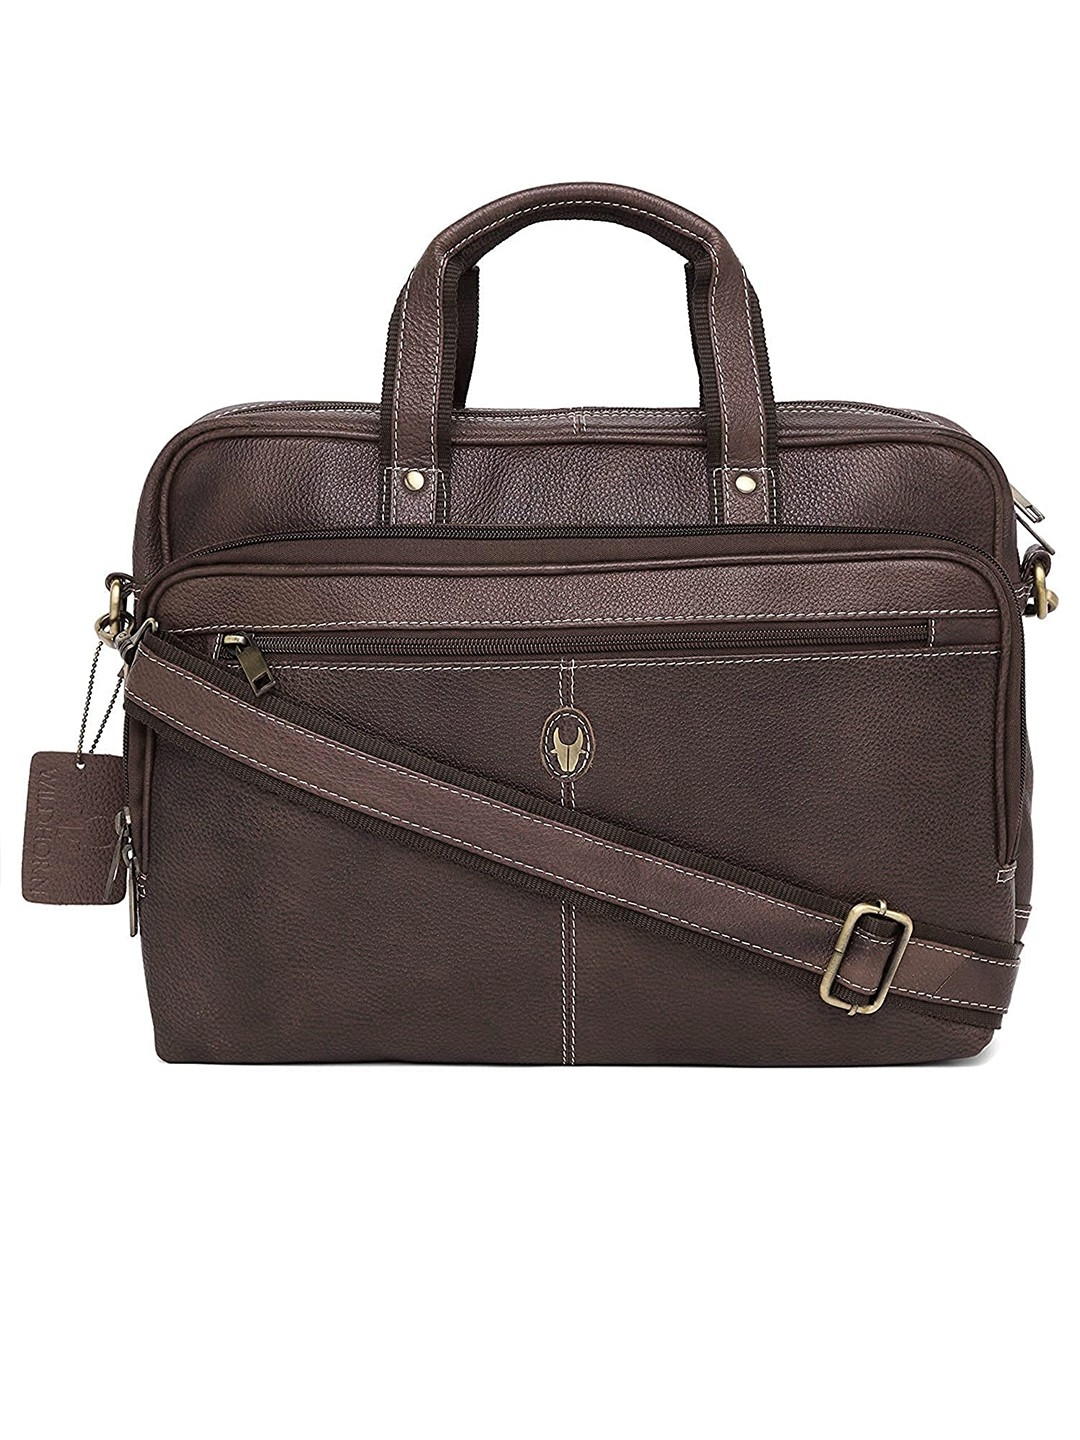 WildHorn Leather Brown Laptop Messenger Bag for Men